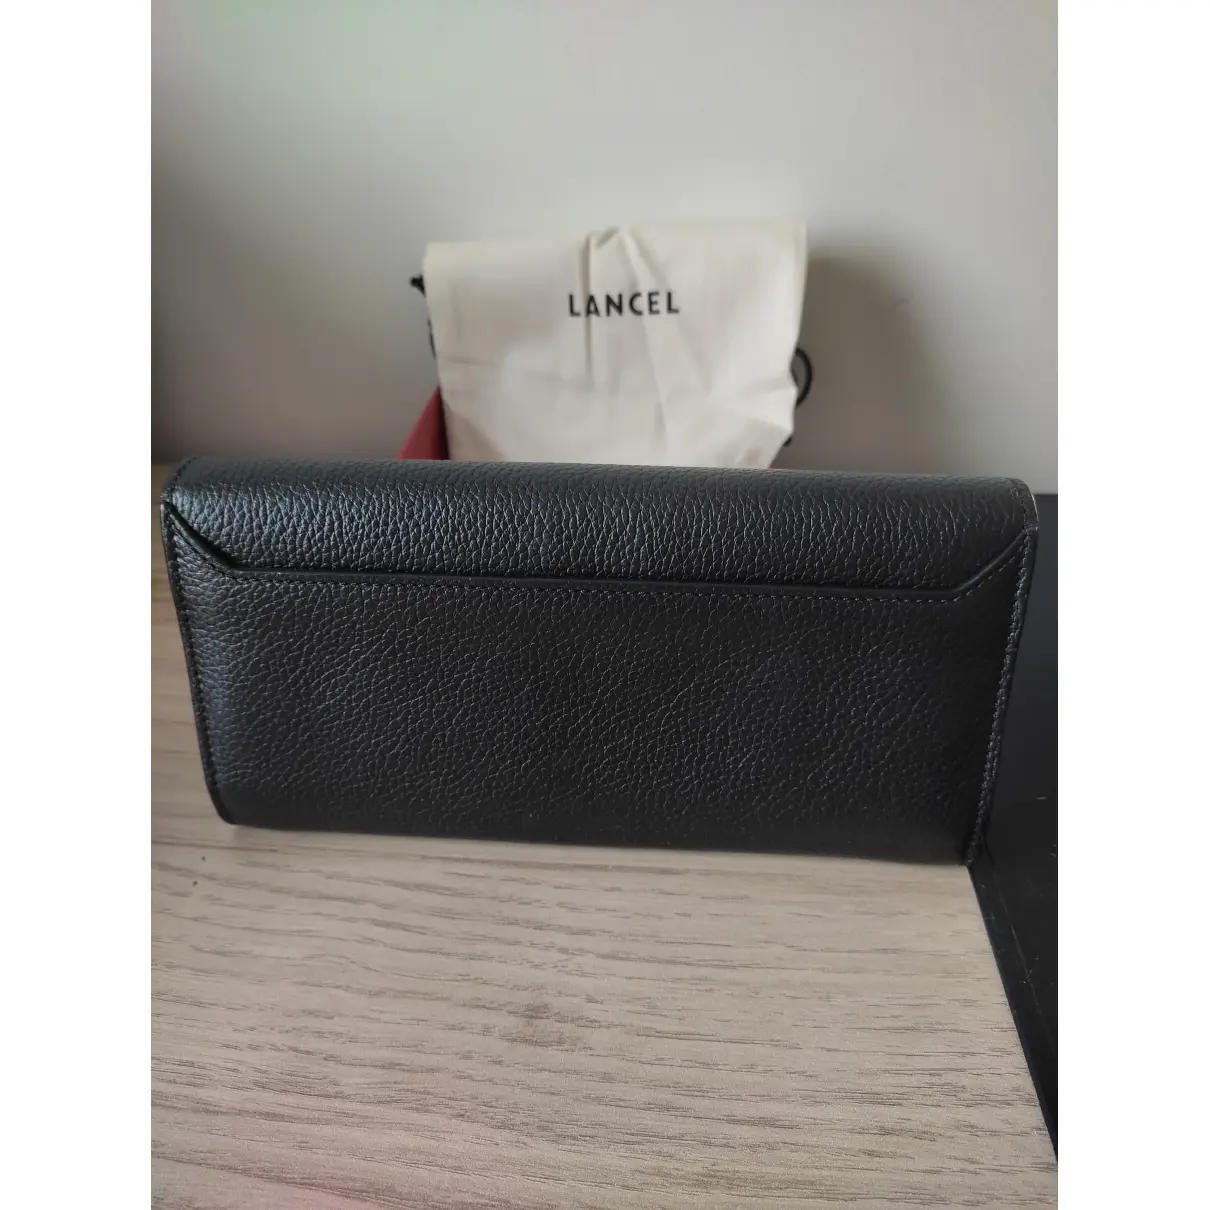 Buy Lancel Lison leather wallet online